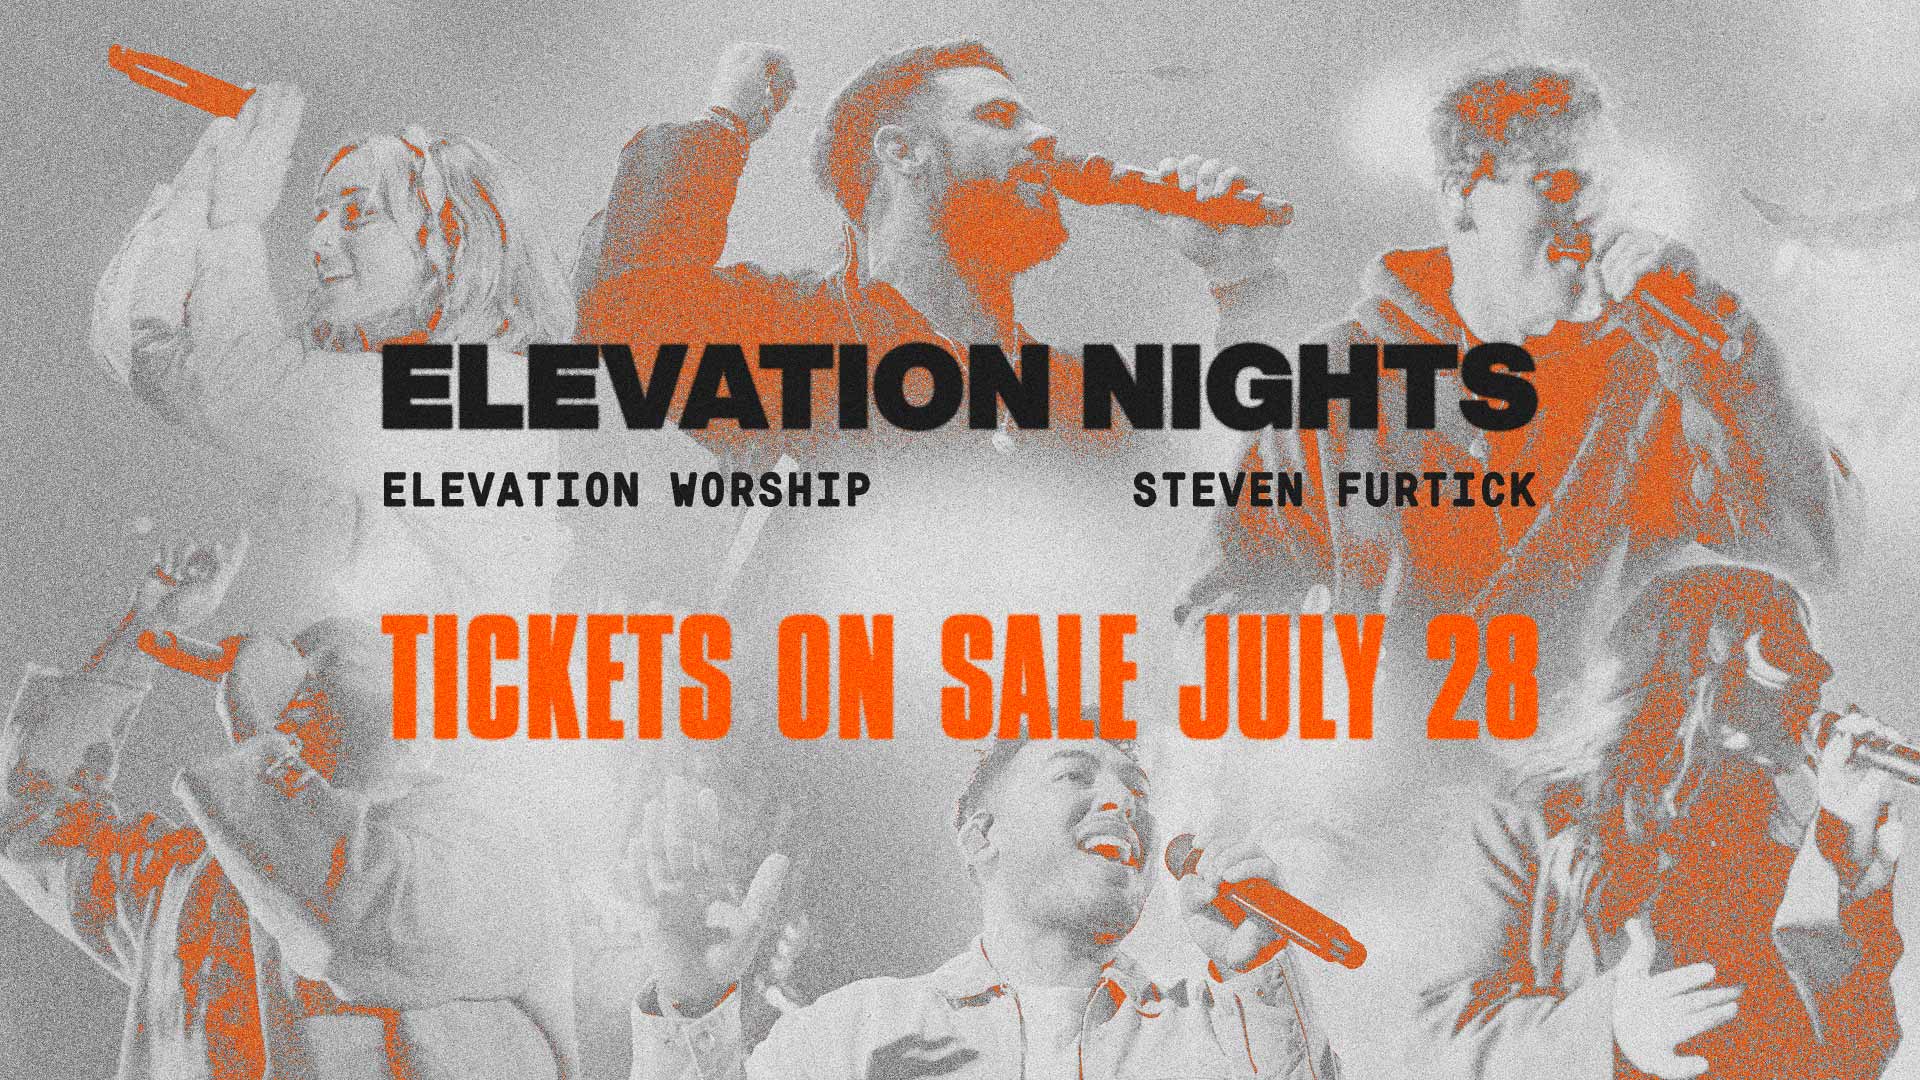 Elevation Worship & Steven Furtick 2022 Arena Tour Elevation Nights